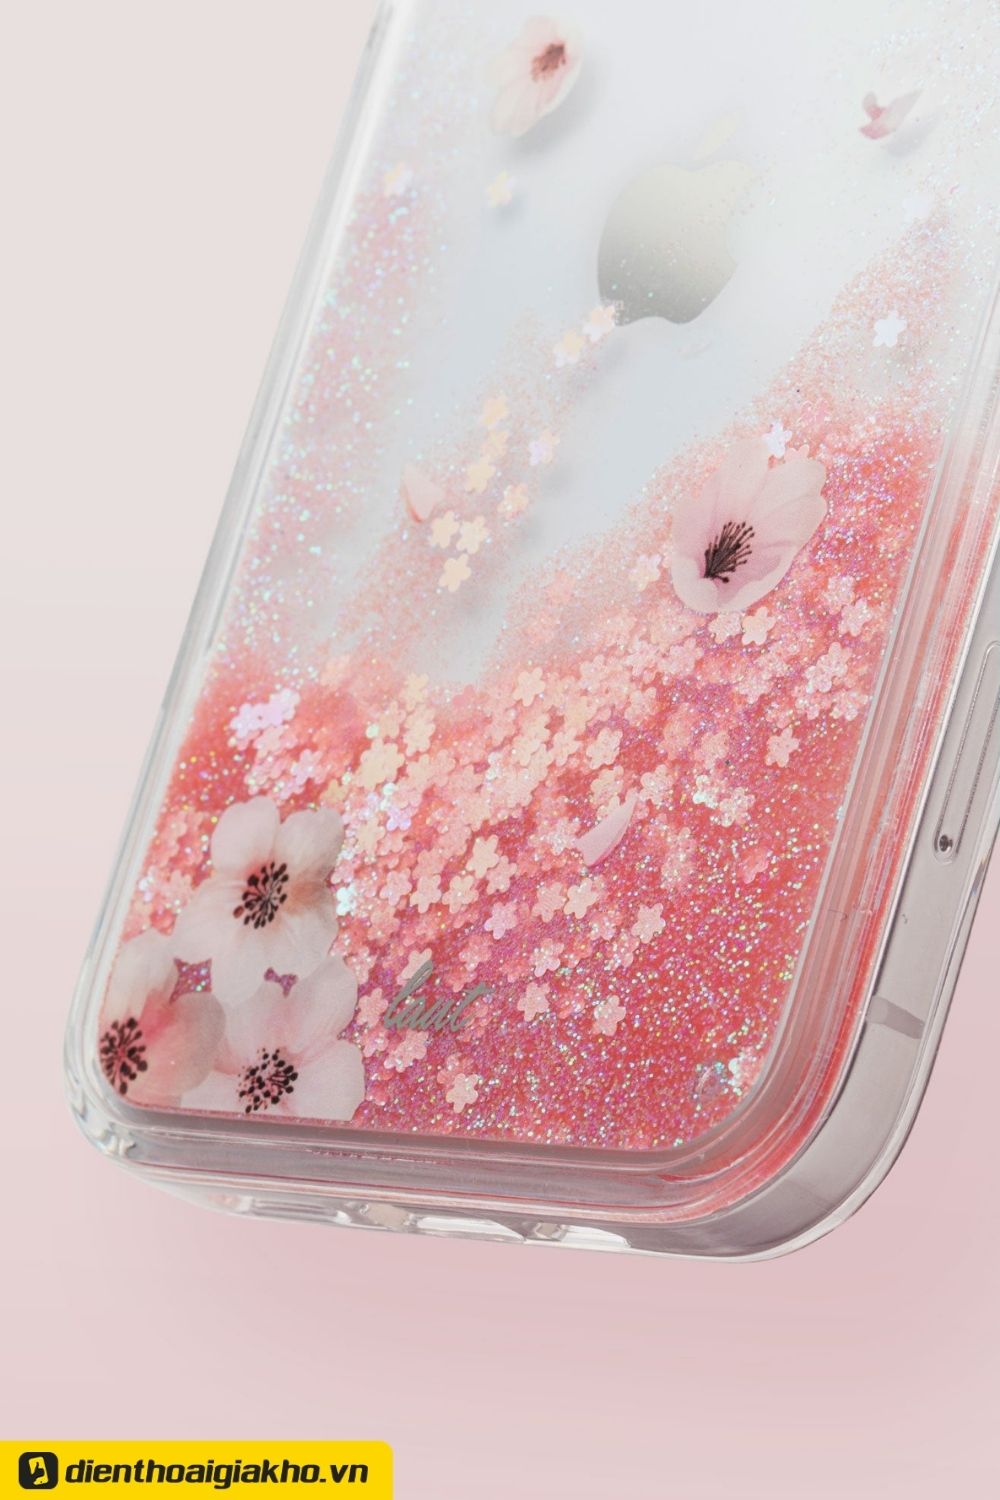 Vỏ trong suốt như pha lê của phụ kiện điện thoại ốp lưng LAUT iPhone 12/12 Pro Liquid Glitter Sakura. Làm tăng thêm tính thẩm mỹ, sang trọng cho chiếc iPhone của người dùng hơn bao giờ hết.